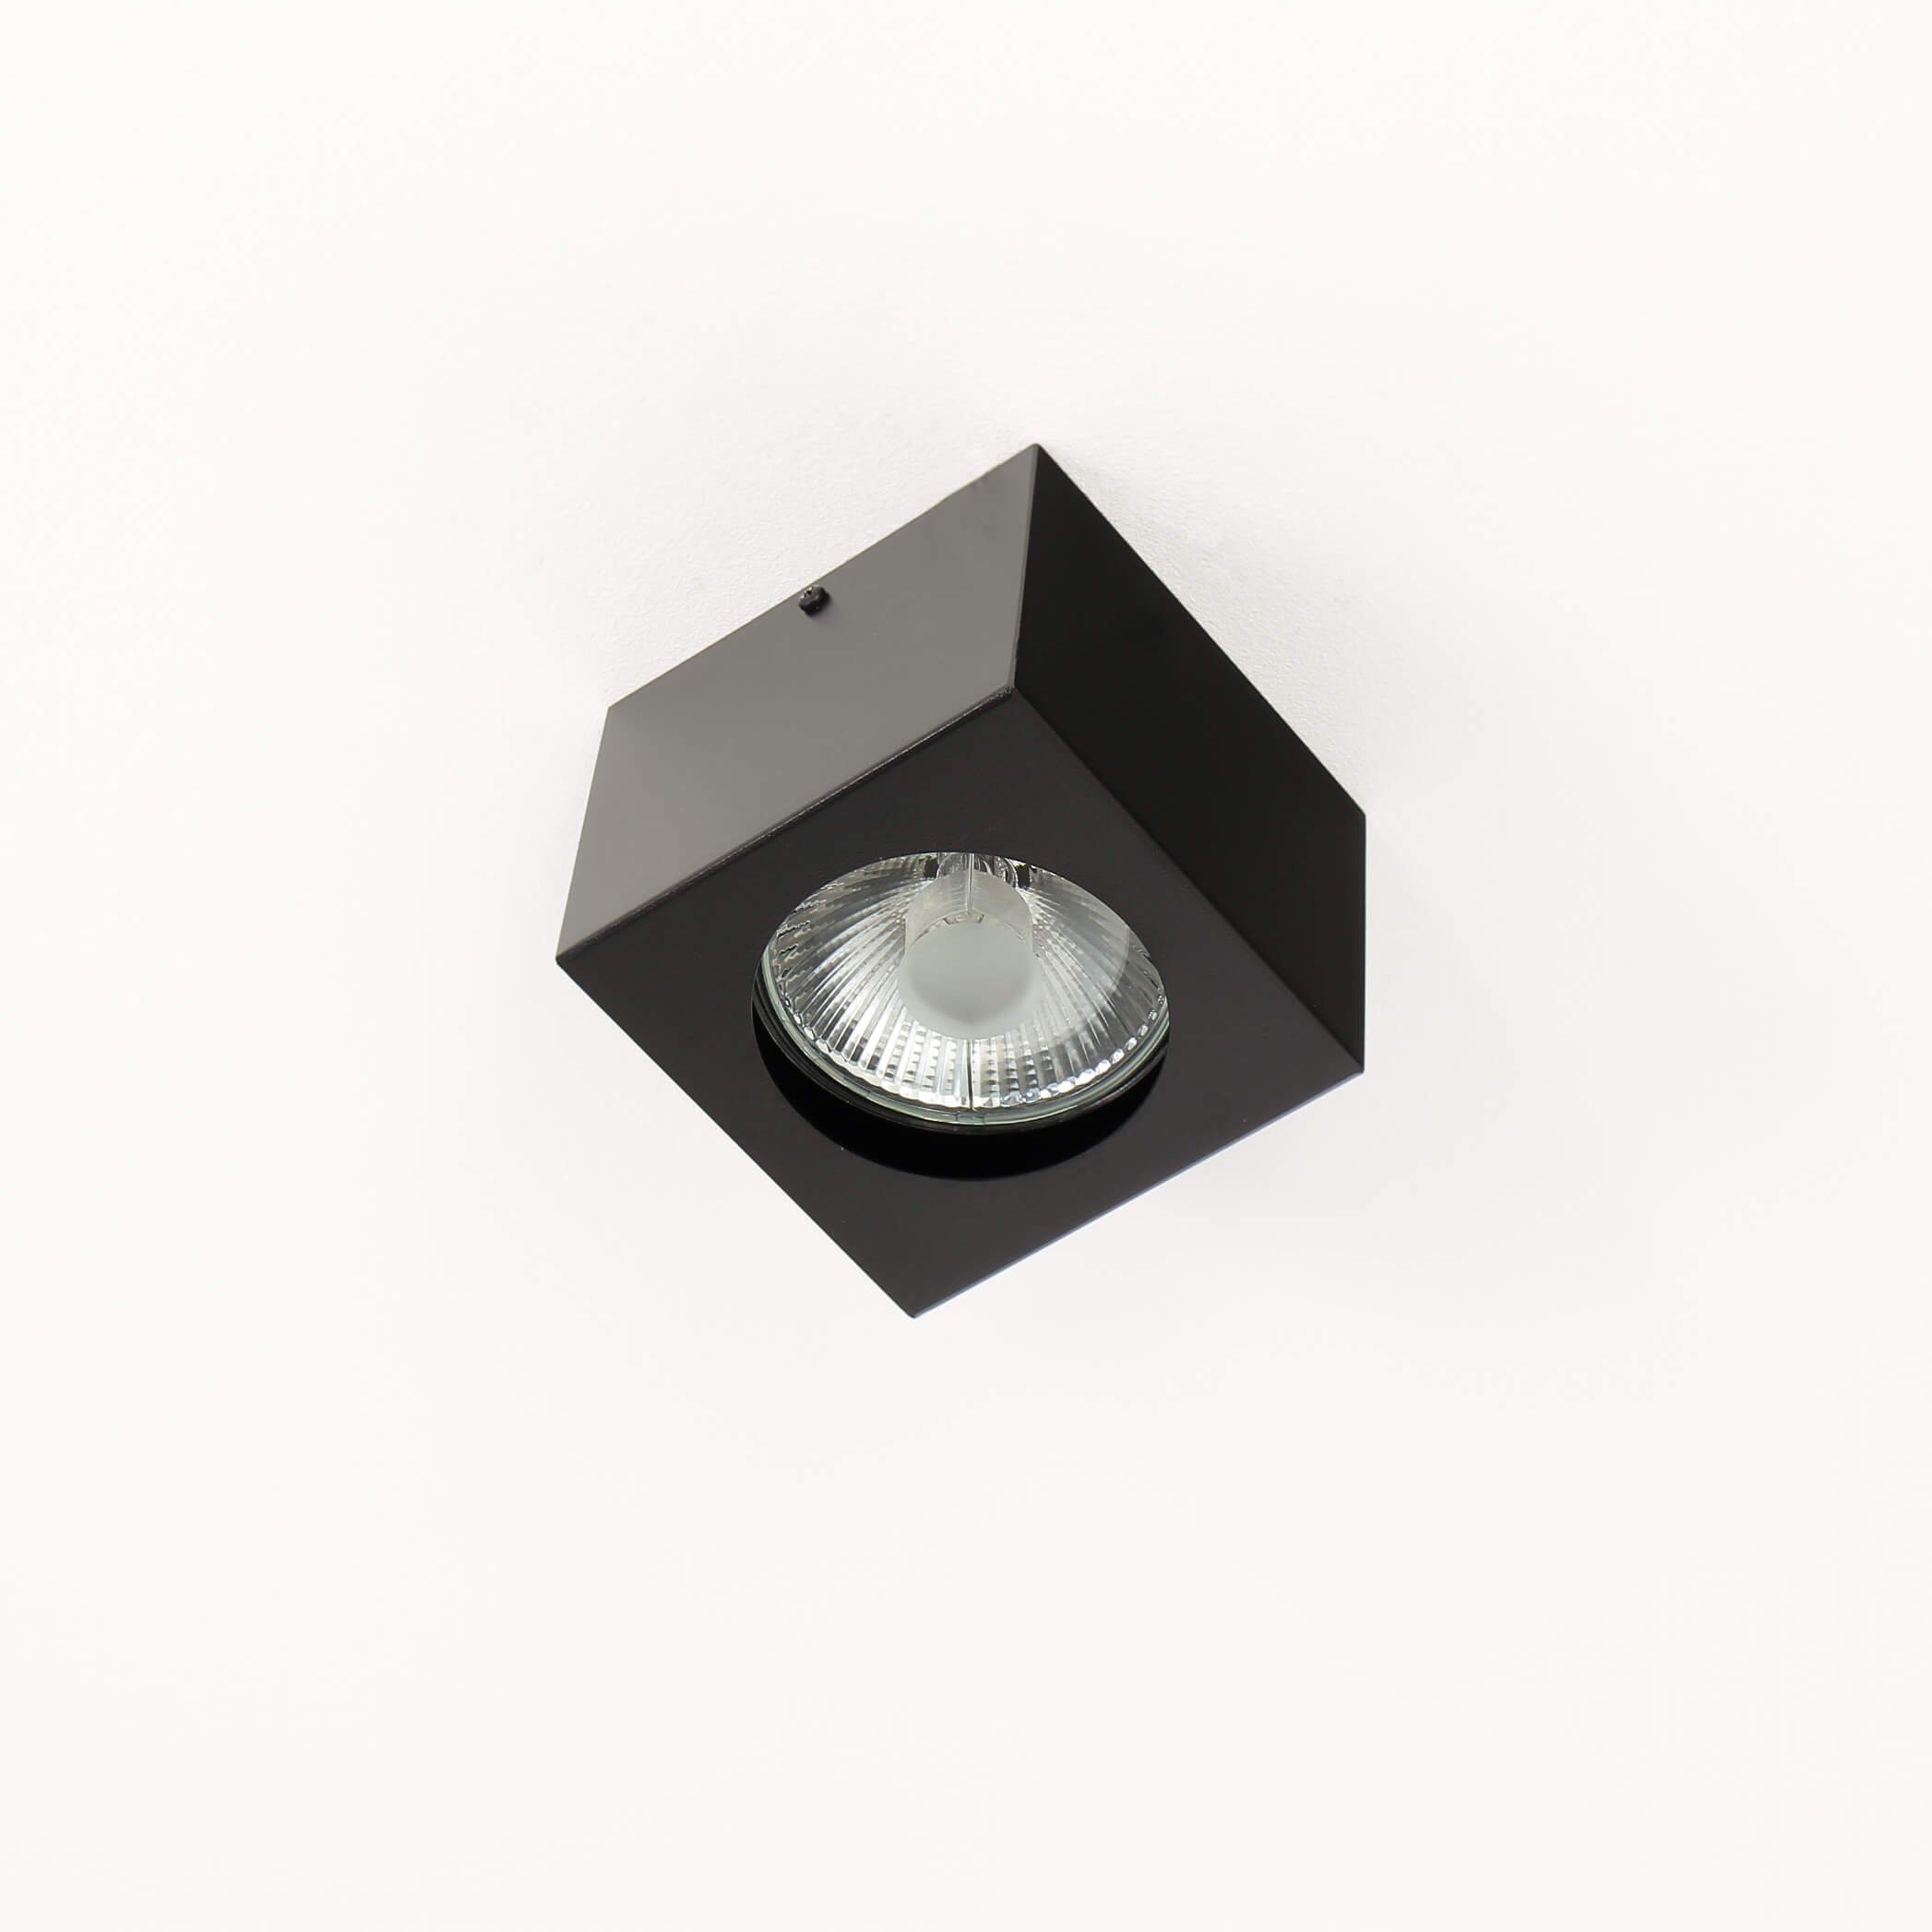 x LED 14 NEX, Strahler wechselbar, cm Deckenlampe 14 GU10 Licht-Erlebnisse eckig Deckenleuchte Spot 10 Warmweiß, x